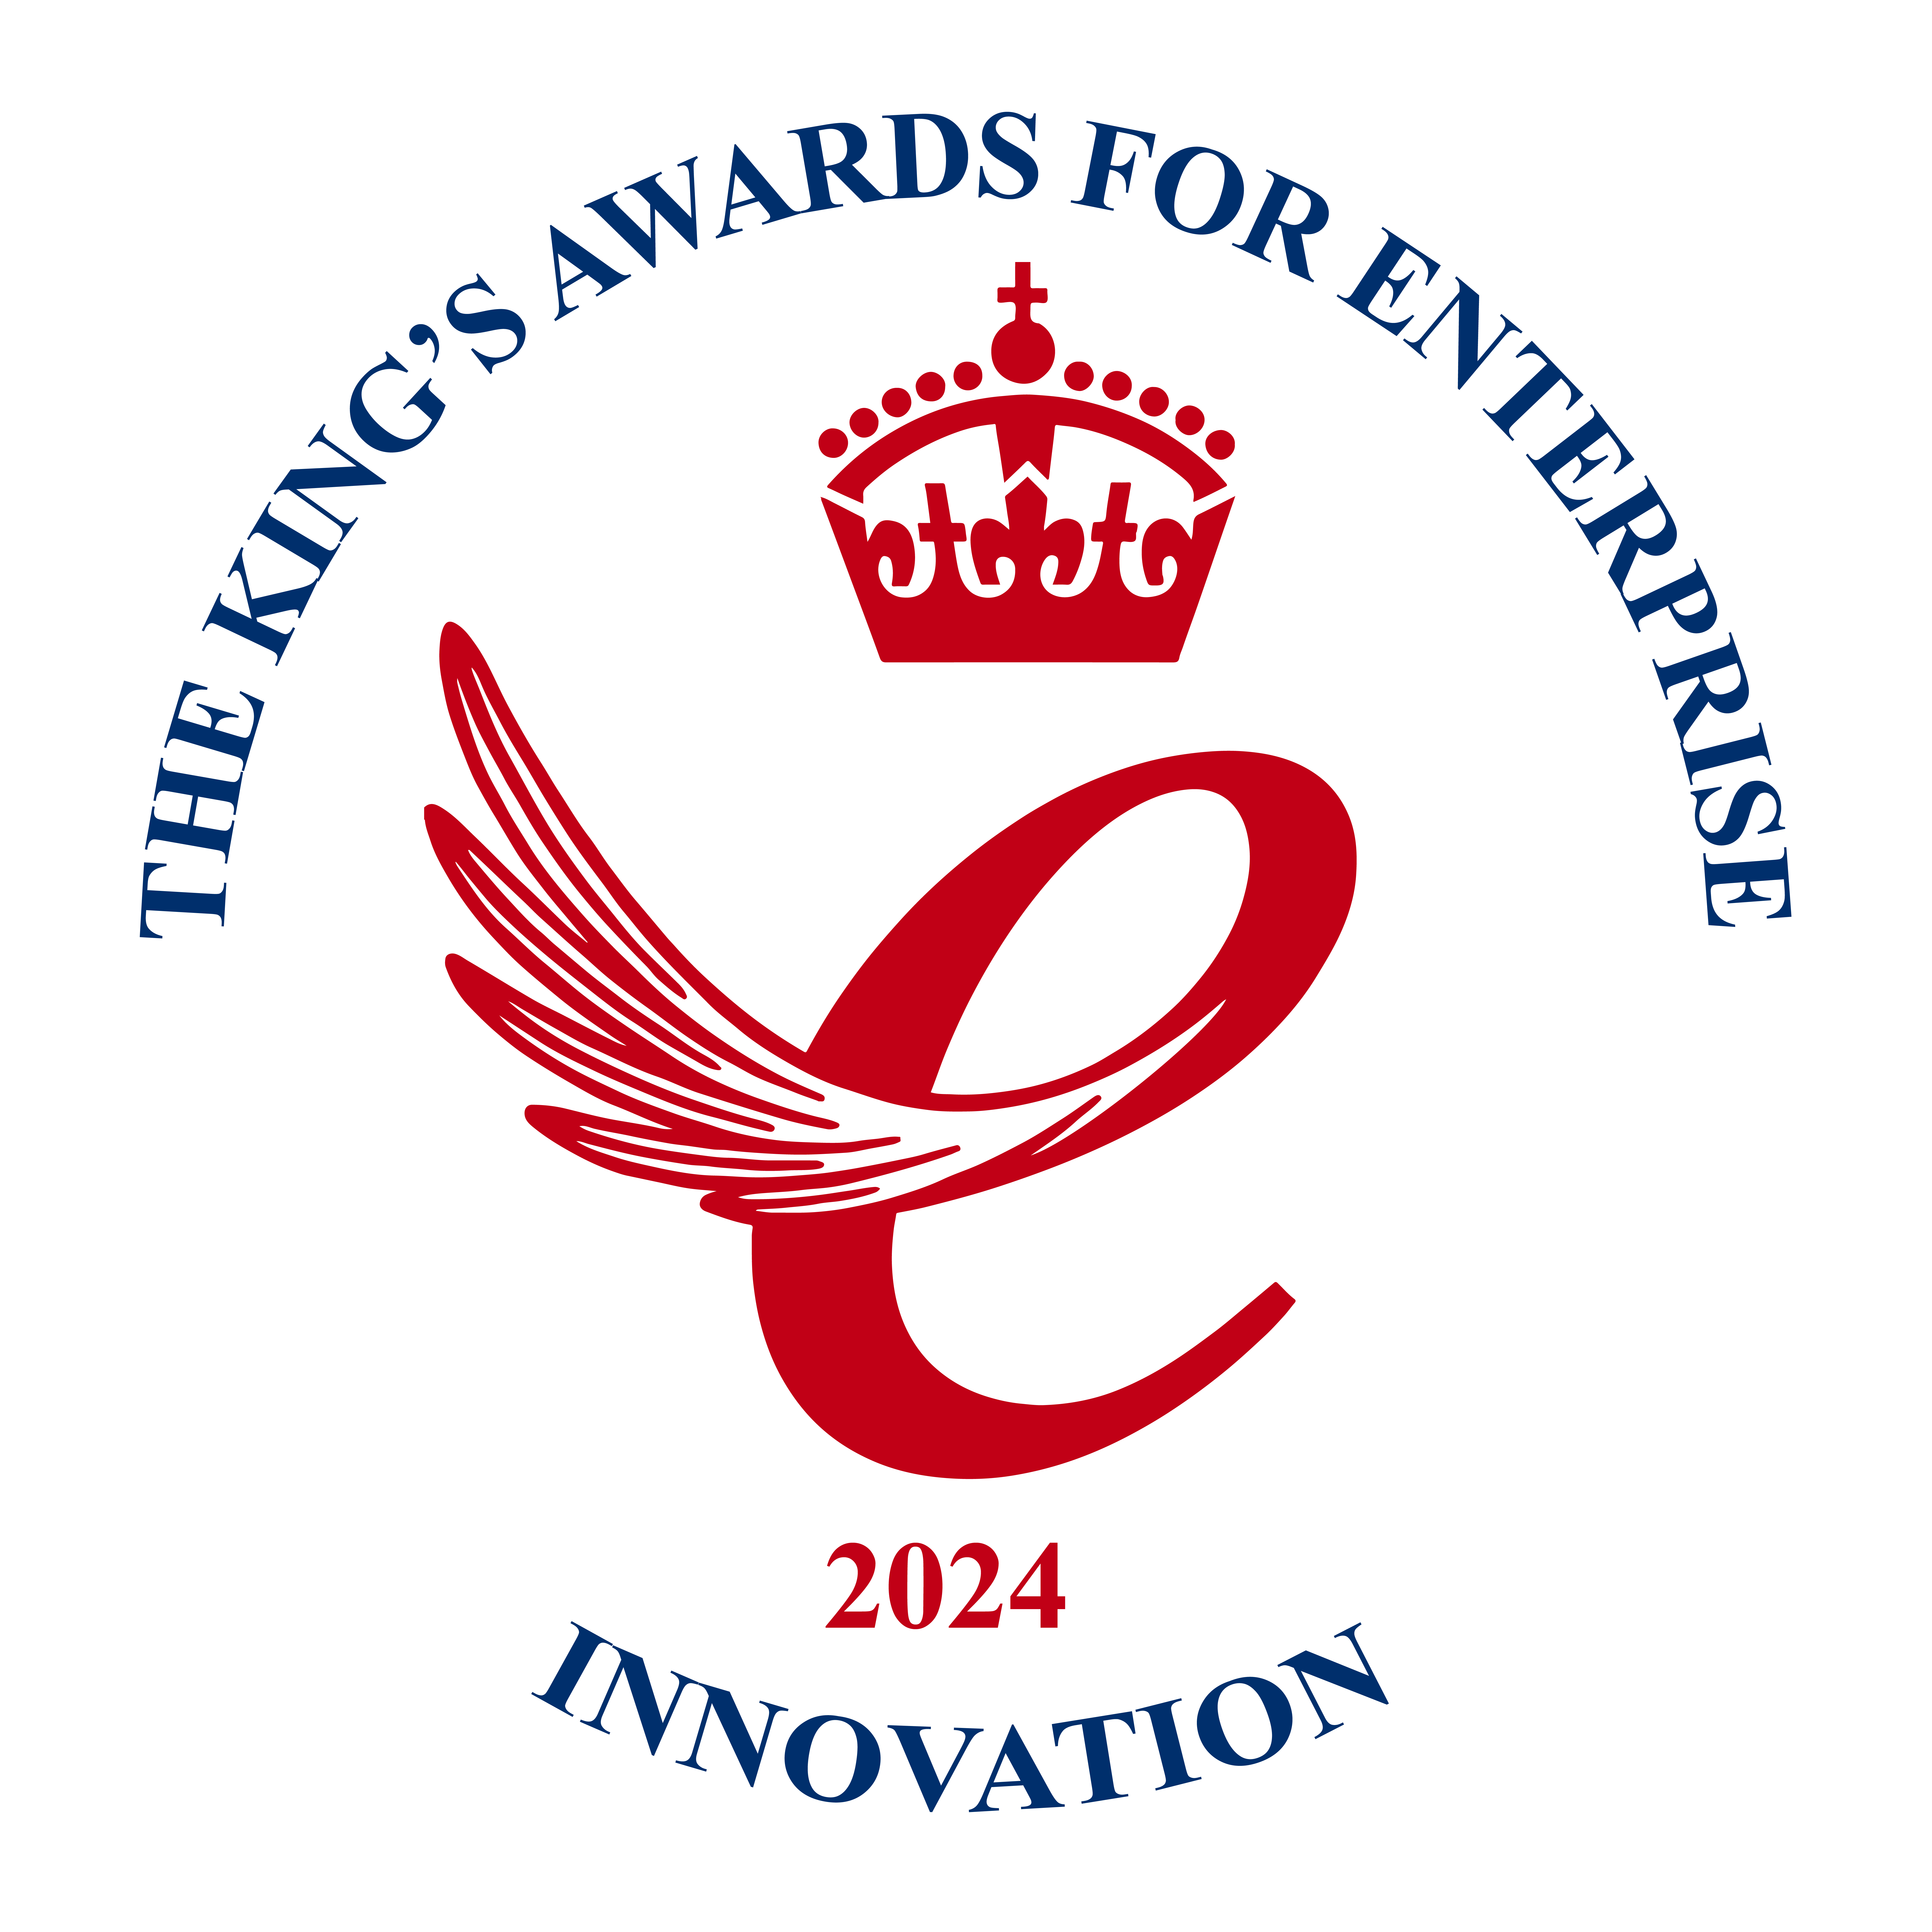 King's award for enterprise emblem innovation category 2024